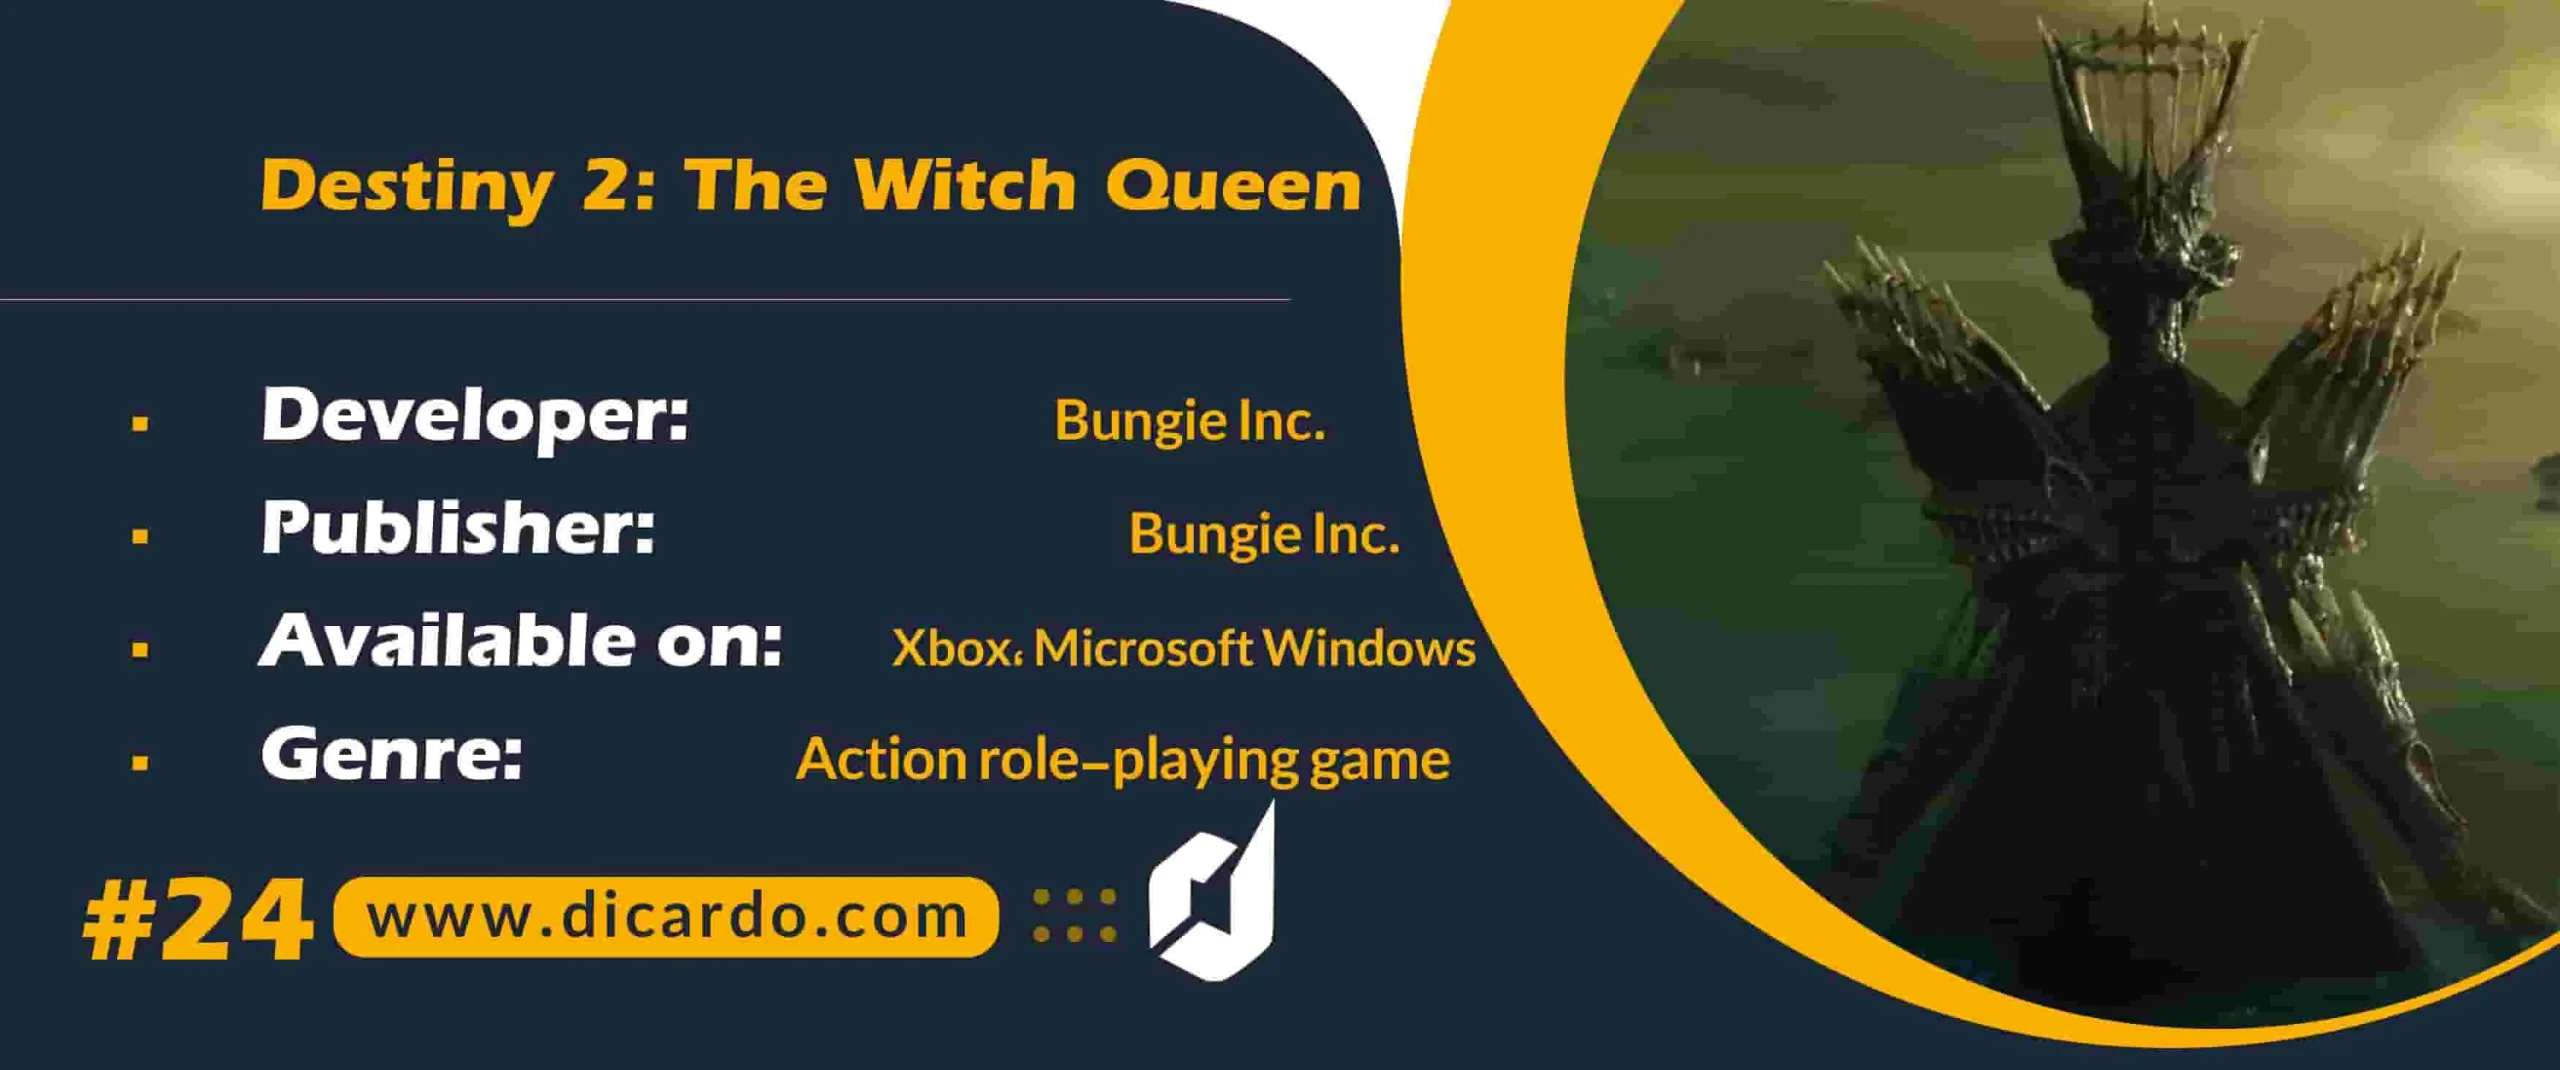 #24 دستینی 2 د ویچ کویین Destiny 2: The Witch Queen